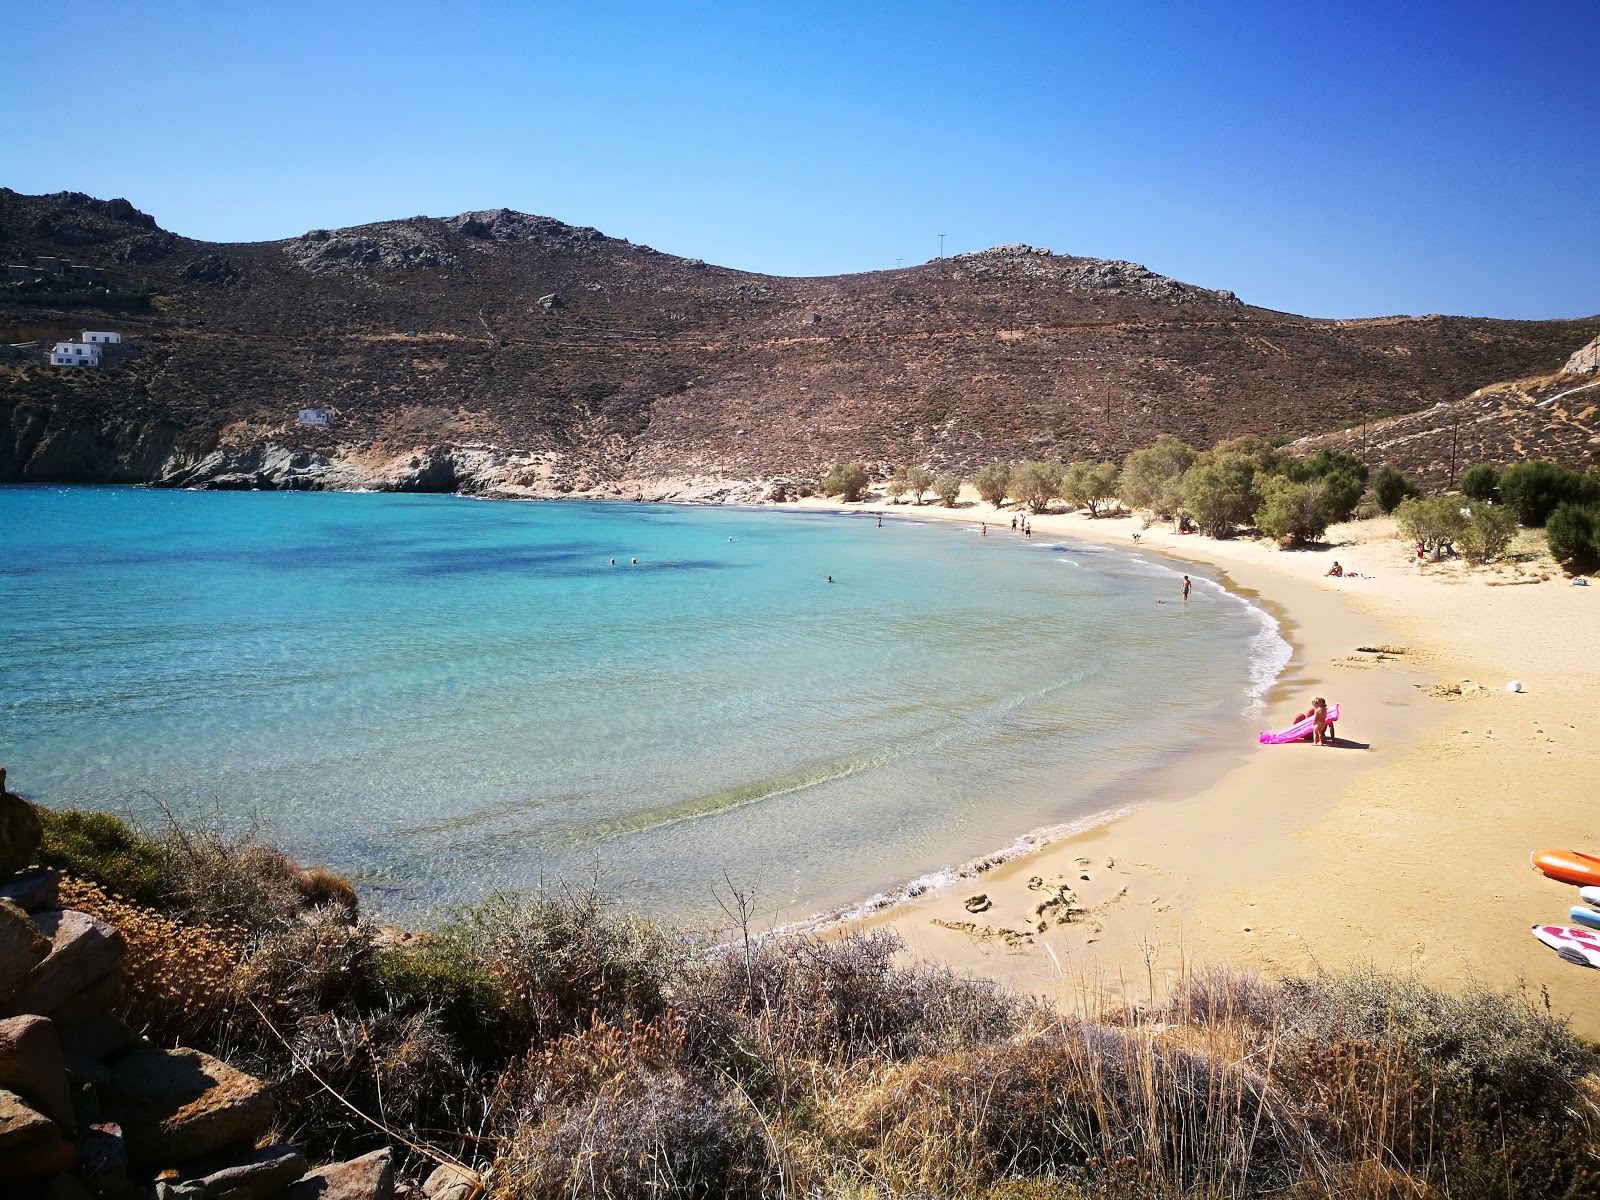 Psili Ammos Plajı'in fotoğrafı parlak ince kum yüzey ile